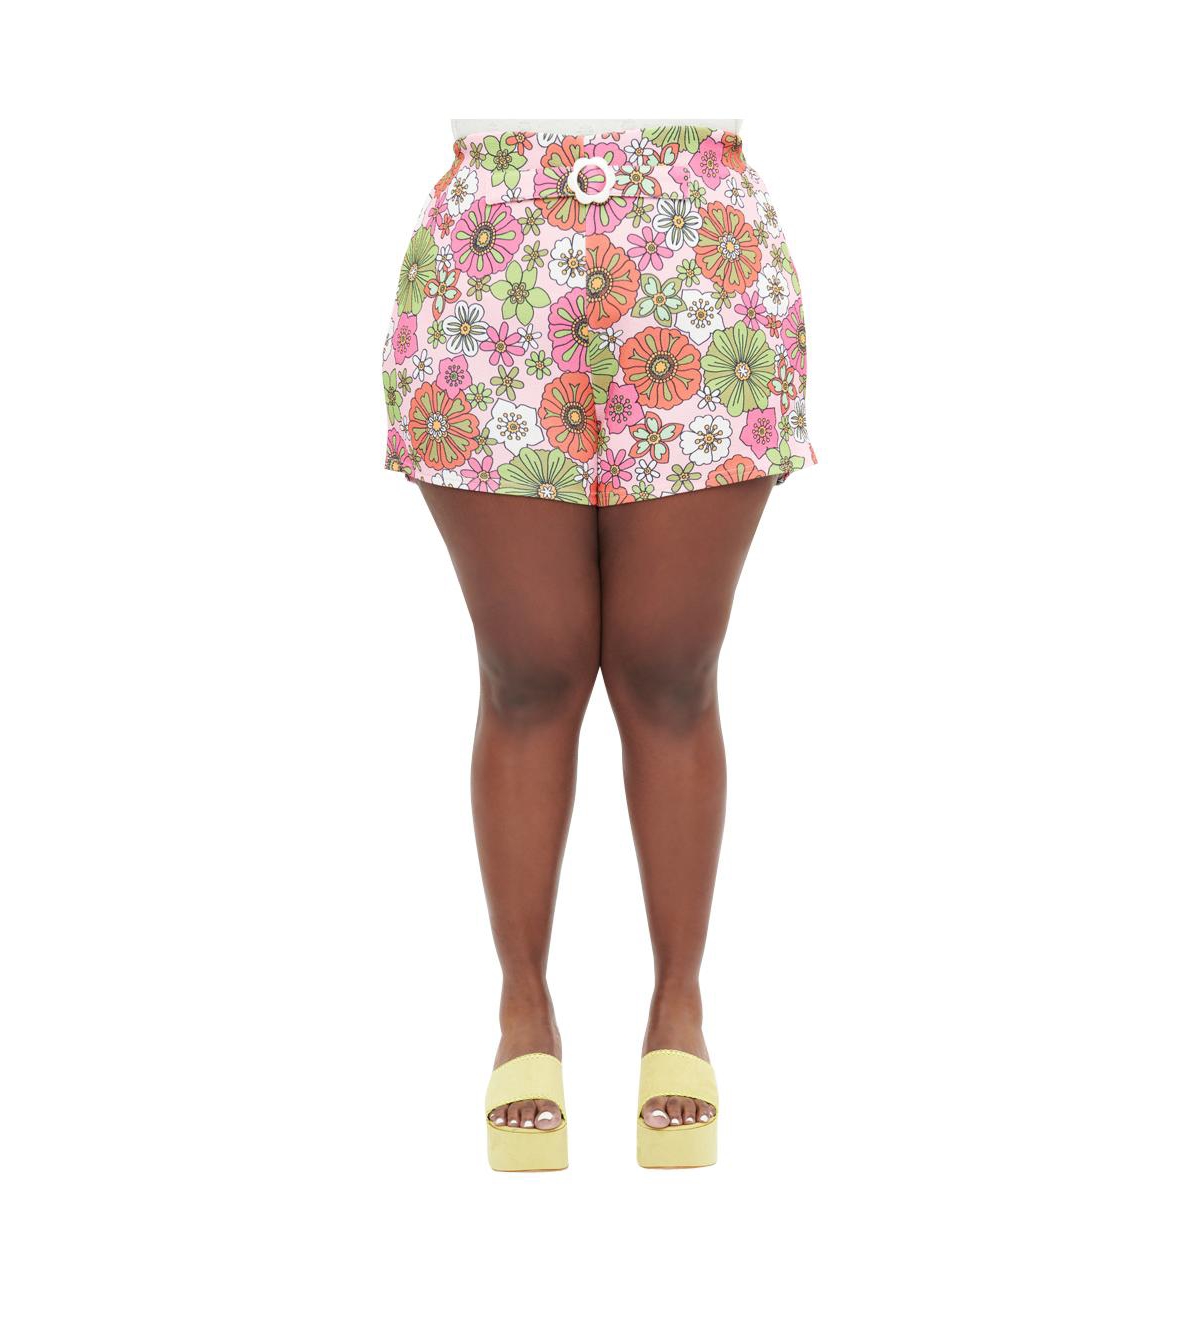 Plus Size 1960s Retro Shorts - Pink retro floral